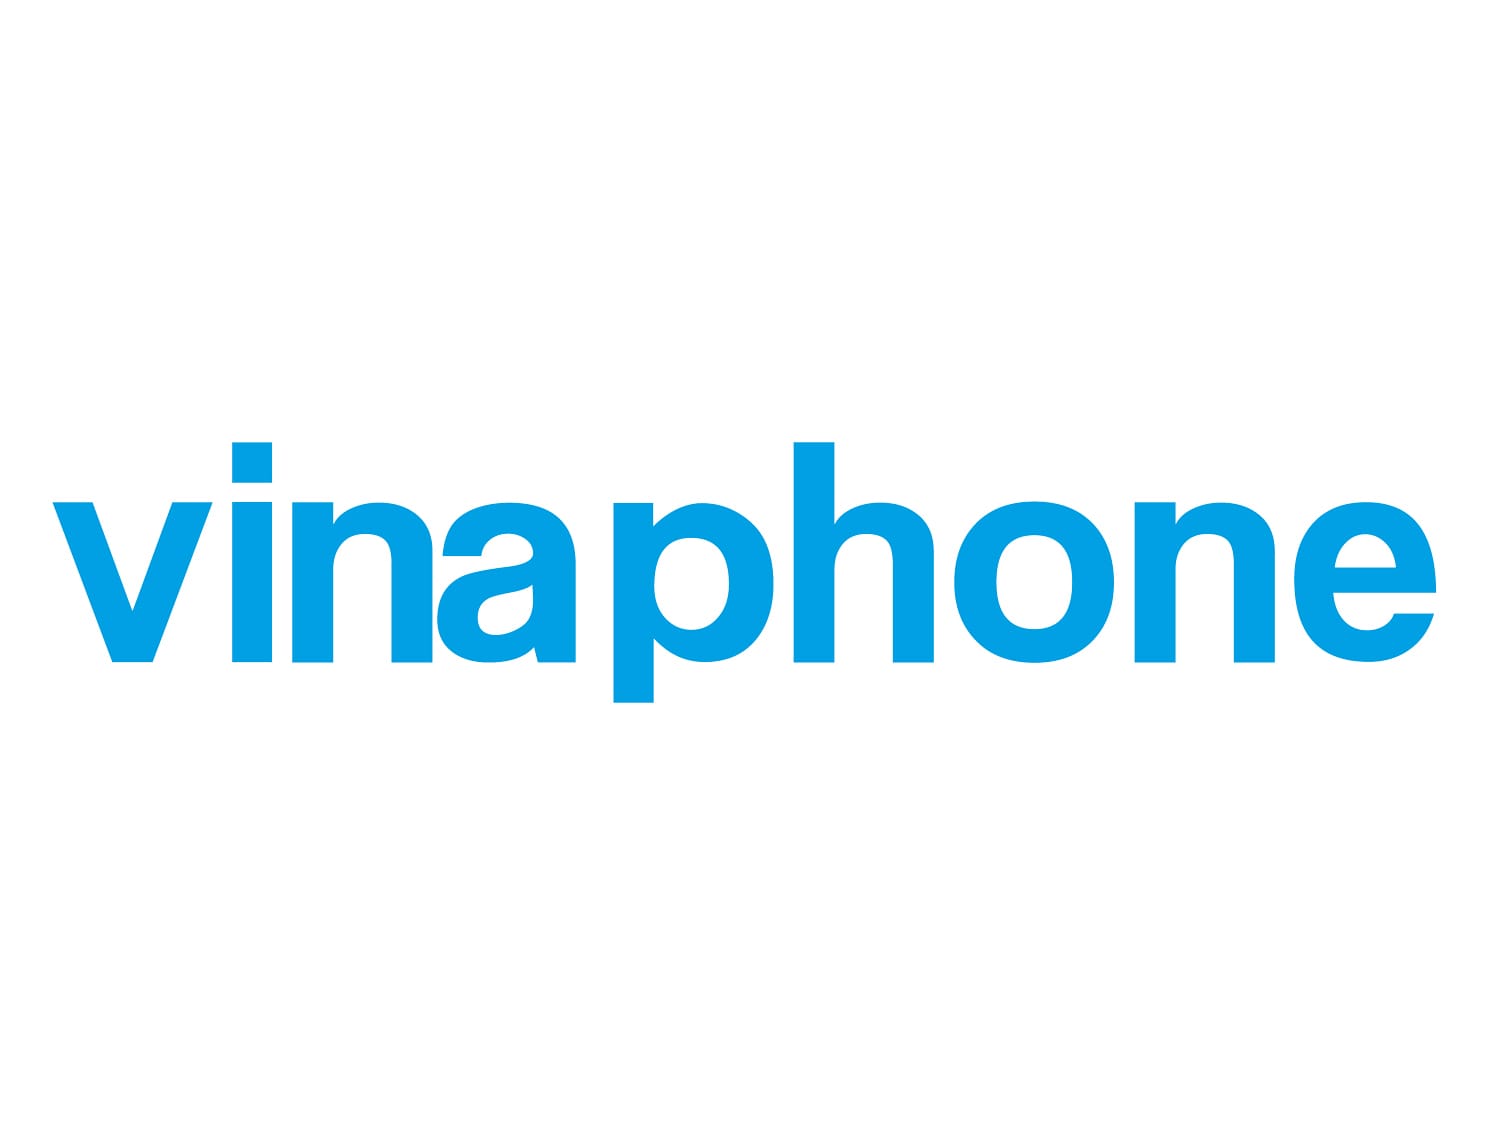 Logo of the Vietnamese mobile provider Vinaphone